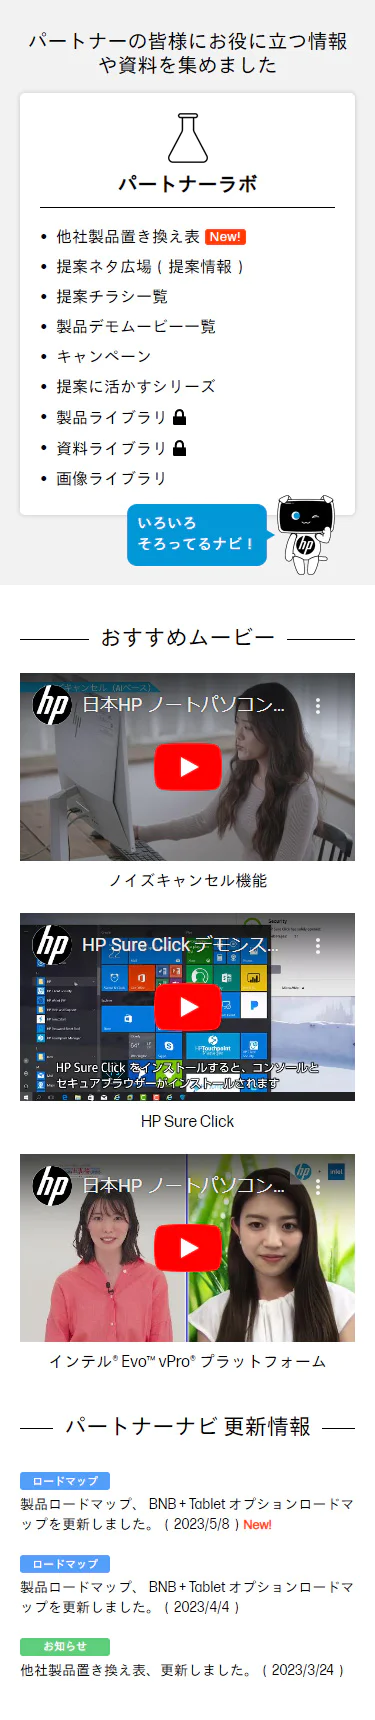 HP パートナーナビトップページ